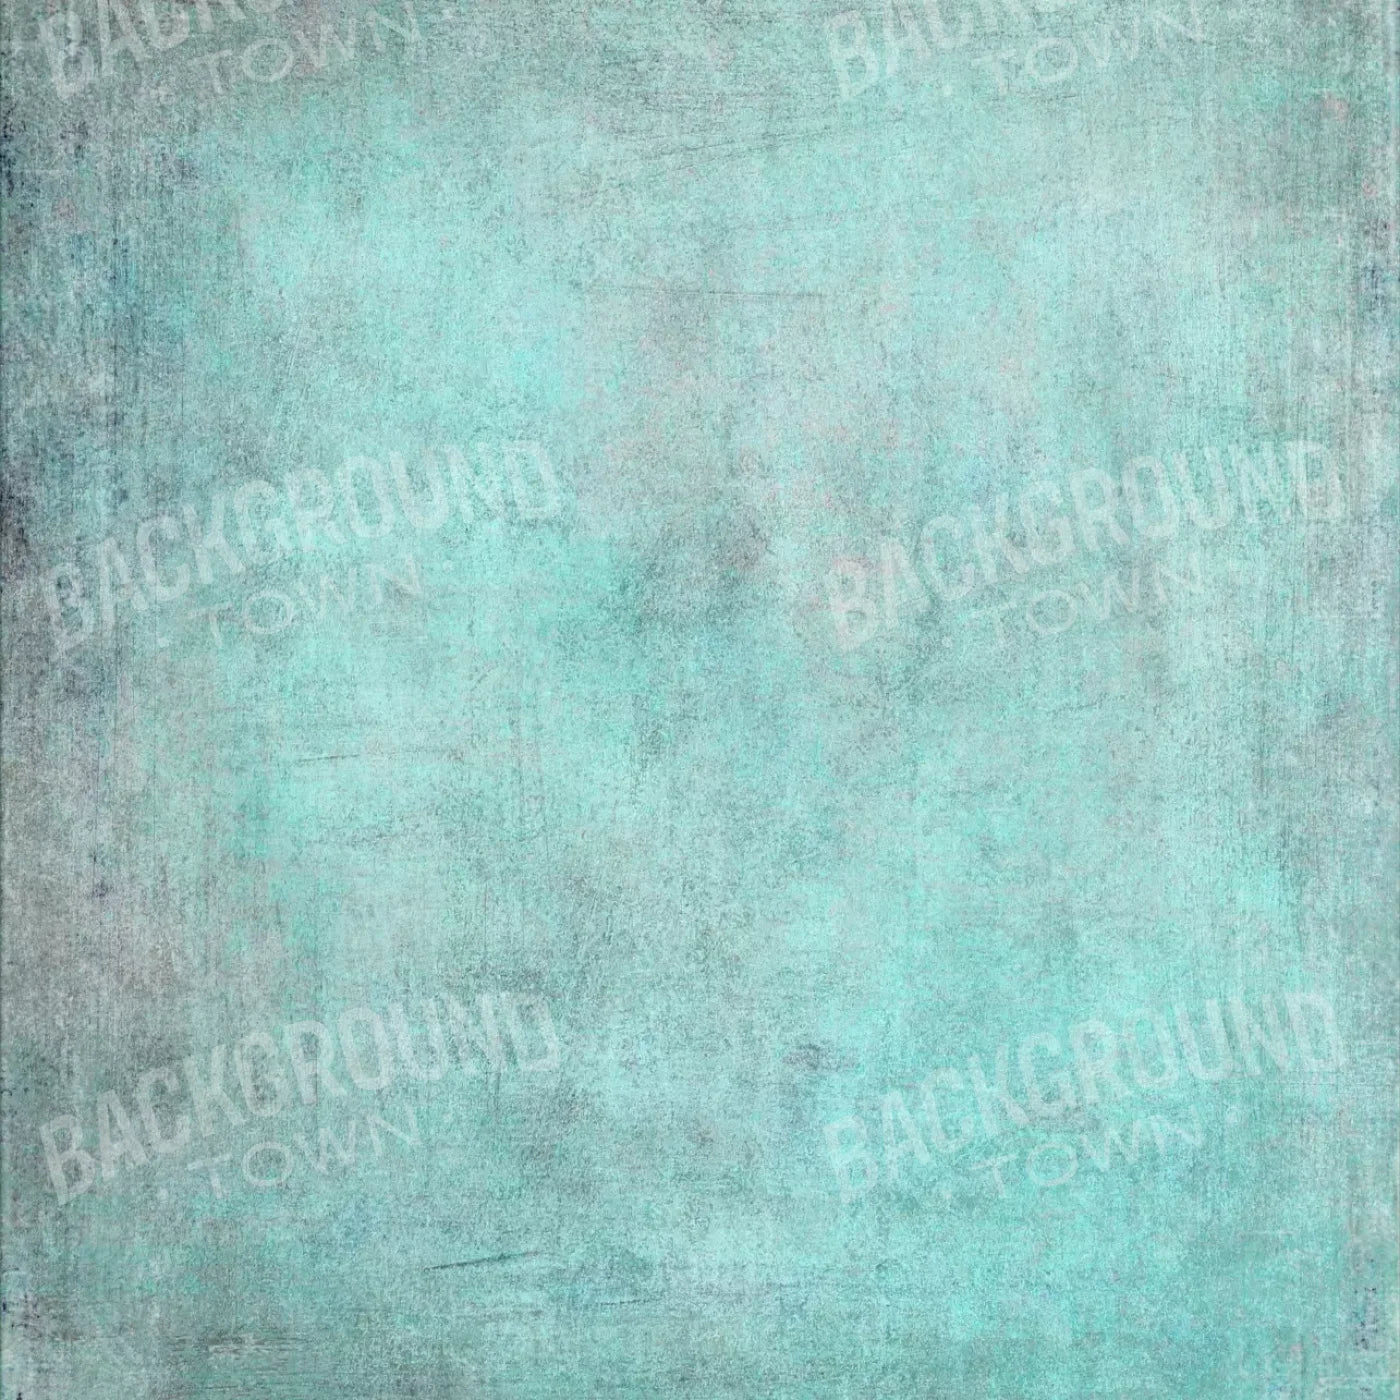 Grunge Seafoam 10X10 Ultracloth ( 120 X Inch ) Backdrop